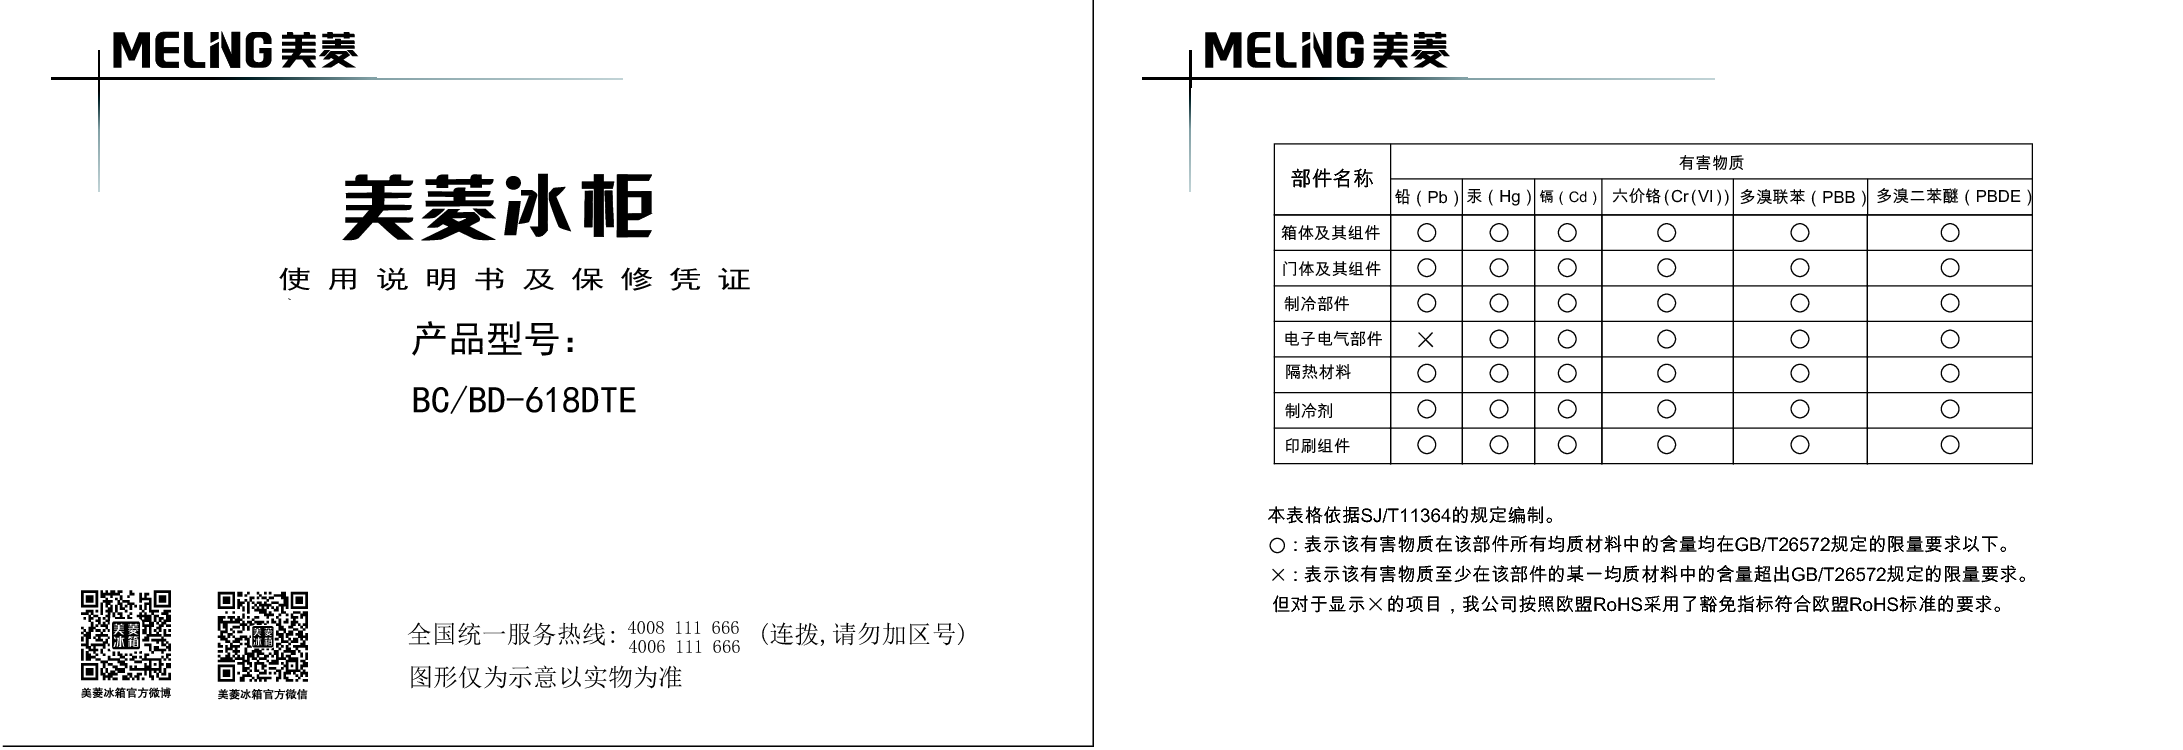 美菱 Meiling BC/BD-618DTE 使用说明书 封面